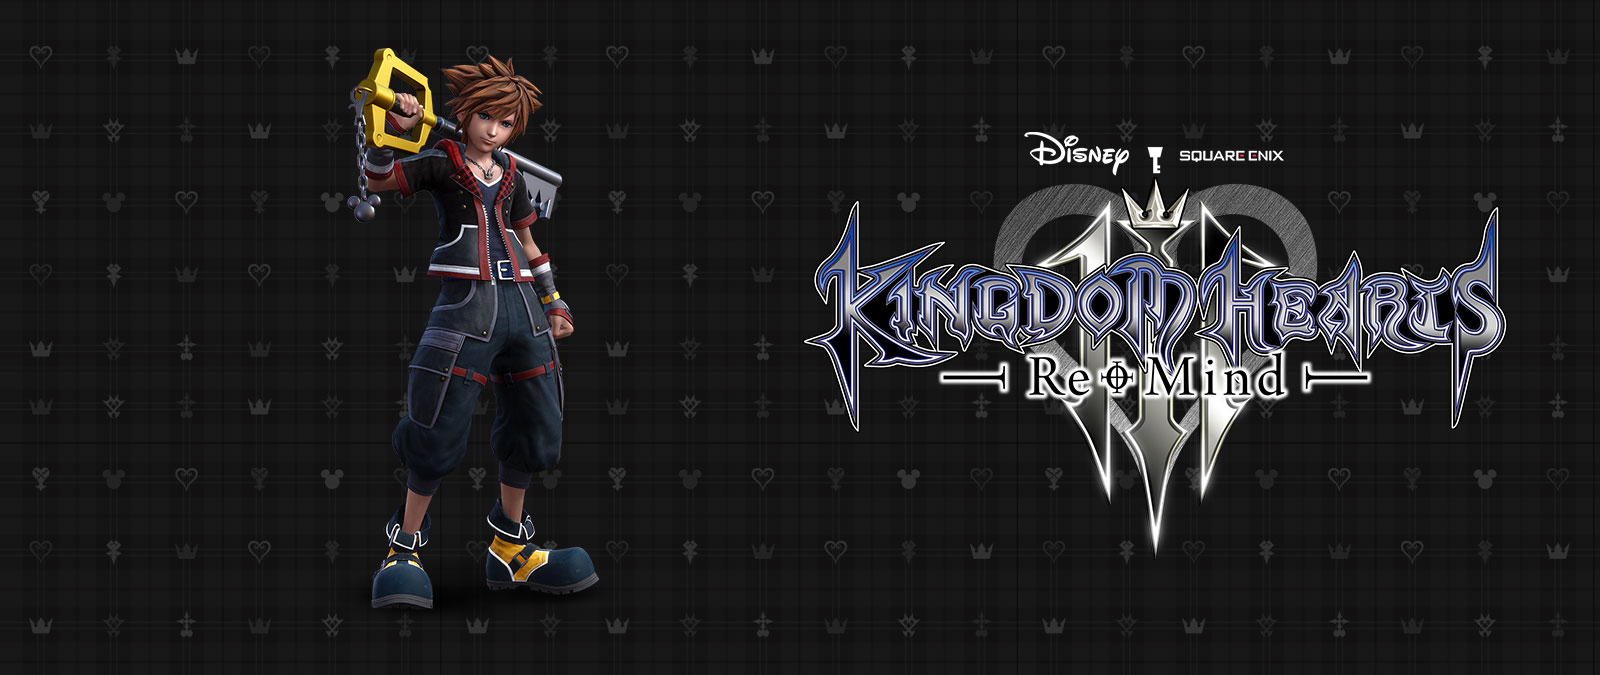 Disney Kingdom Hearts 3, Re-Mind, Sora steht vor einem schwarz gemusterten Hintergrund, wobei das Keyblade auf seiner Schulter ruht. 